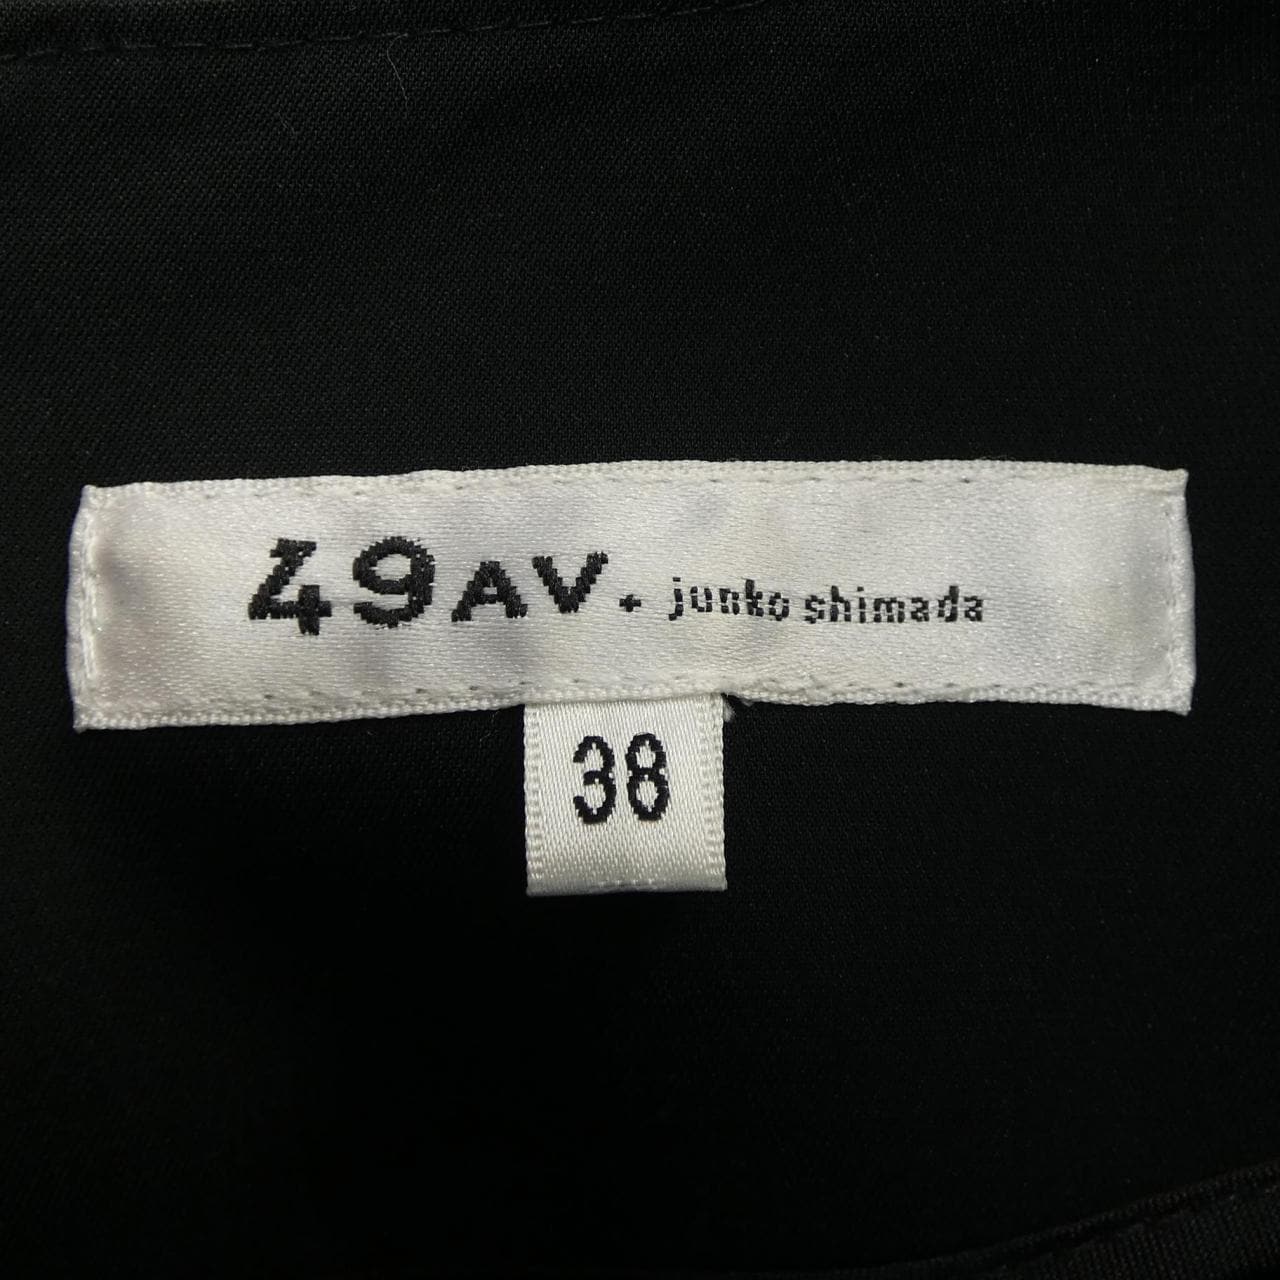 49アベニュージュンコシマダ 49AV.junko shimada トップス